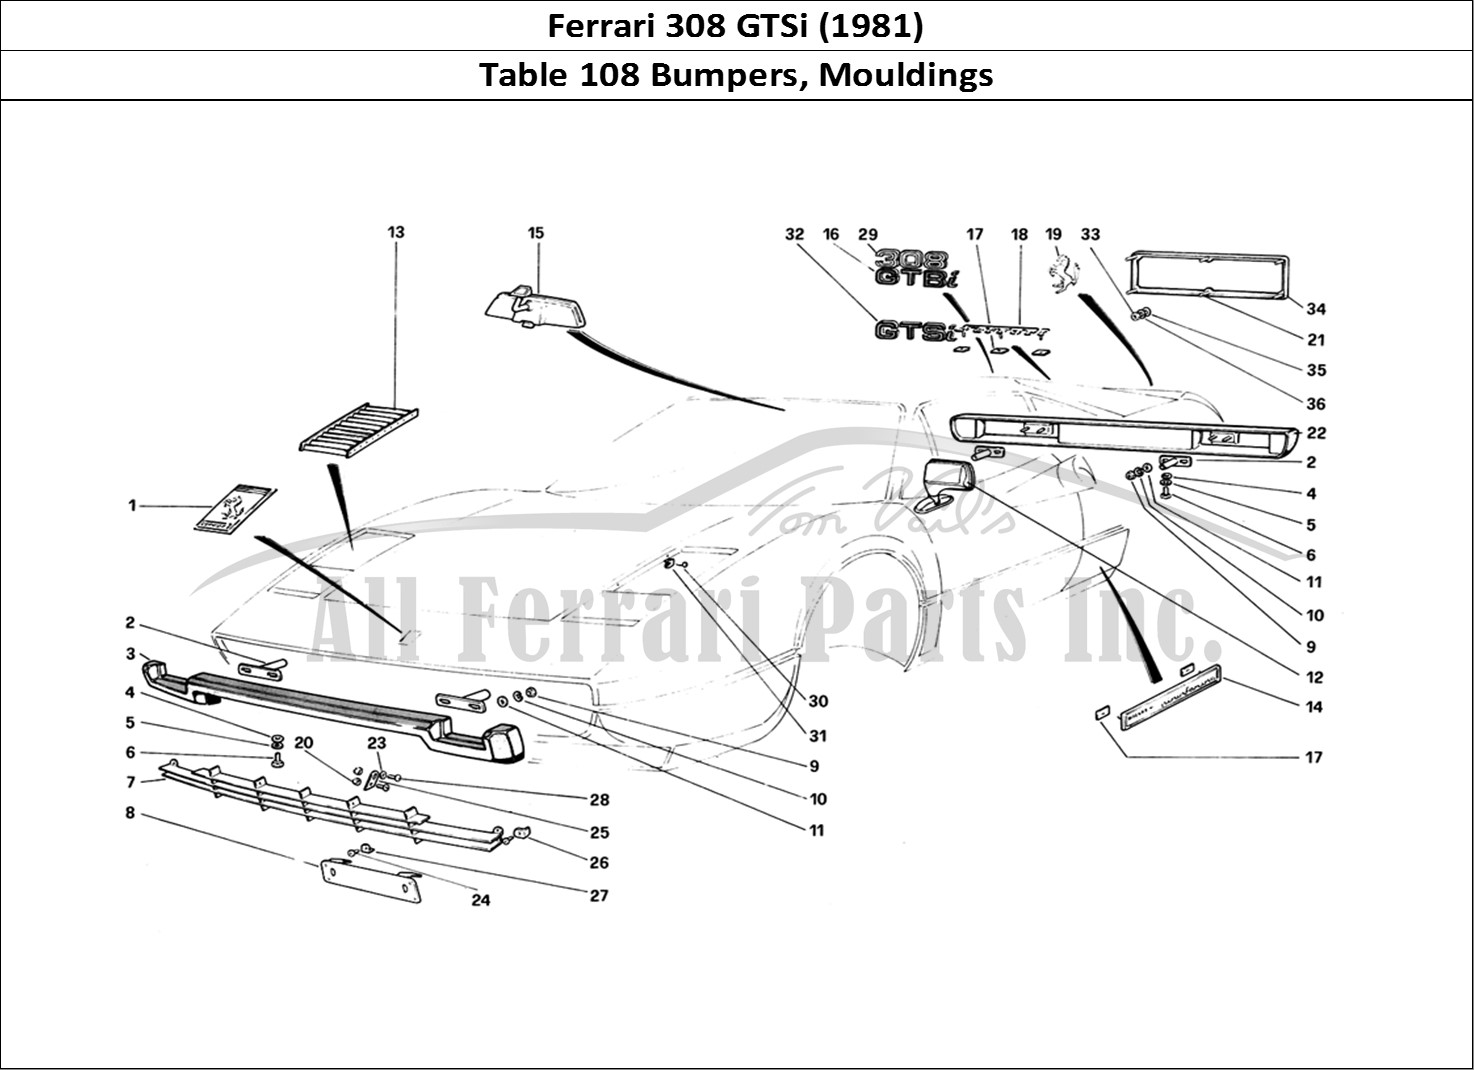 Ferrari Parts Ferrari 308 GTBi (1981) Page 108 Bumpers and Mouldings